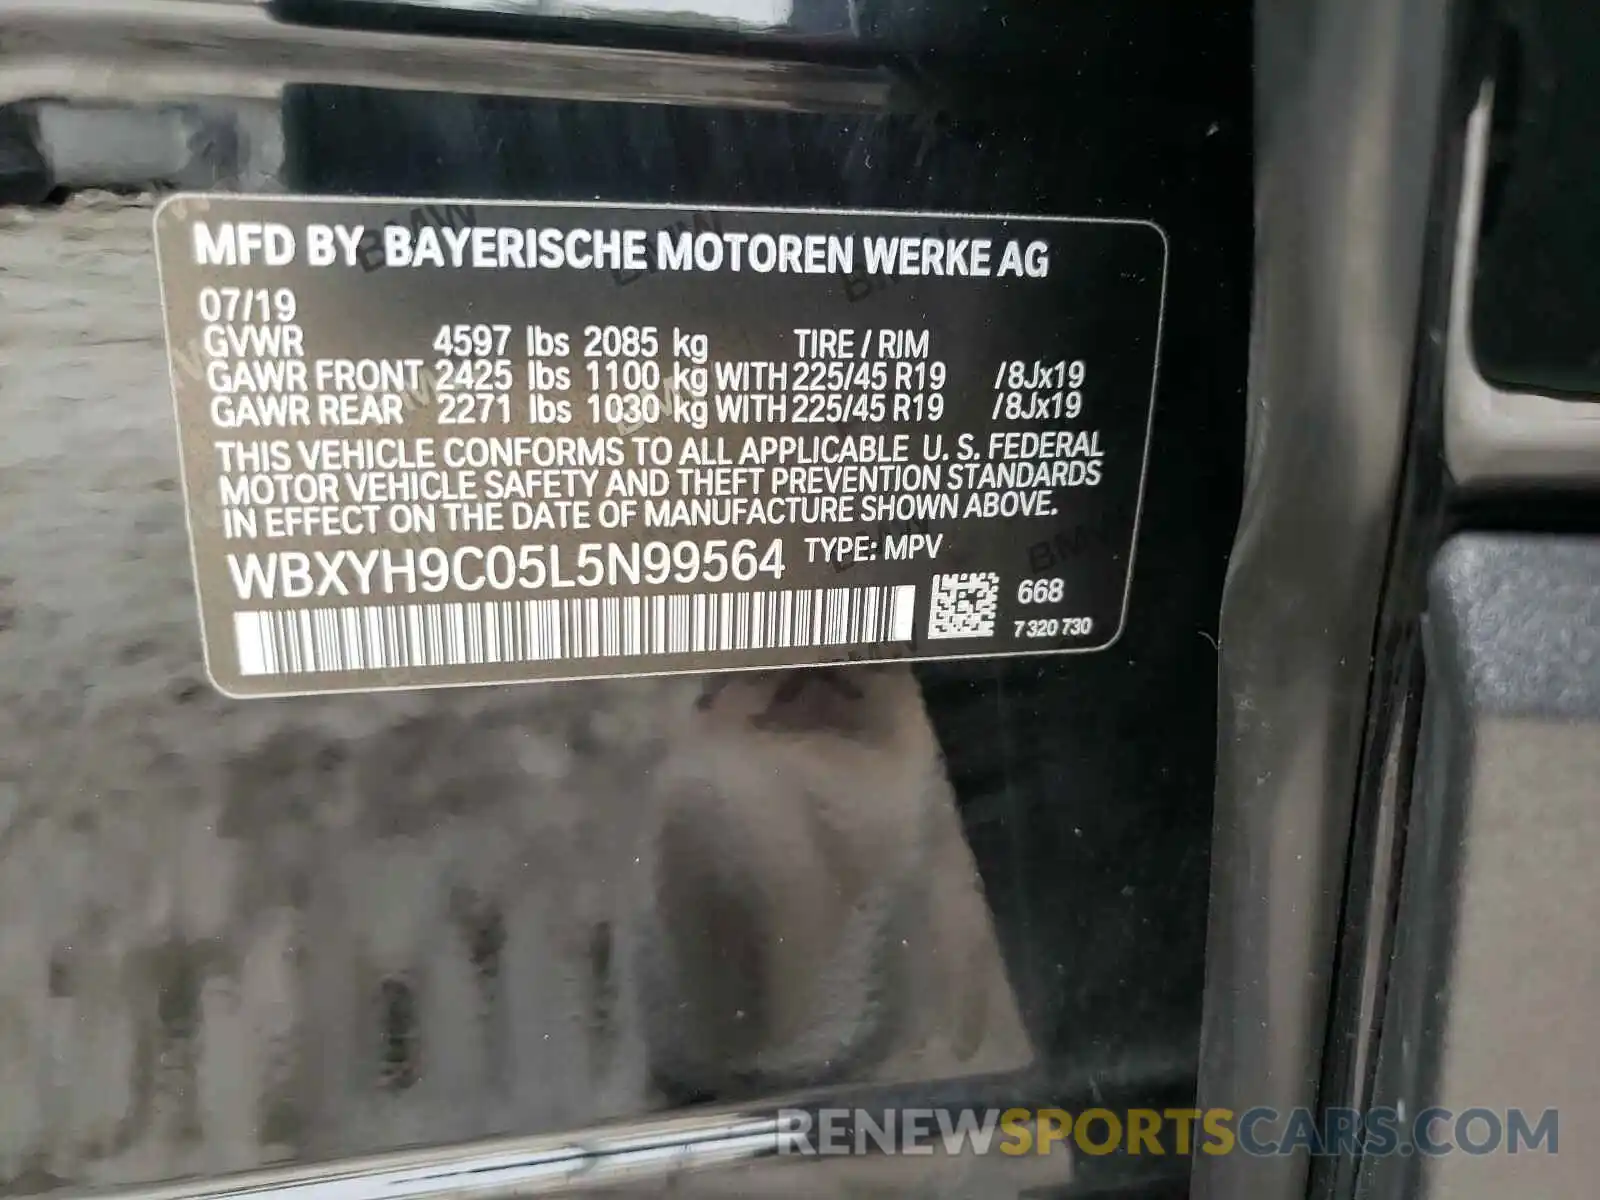 10 Photograph of a damaged car WBXYH9C05L5N99564 BMW X2 2020